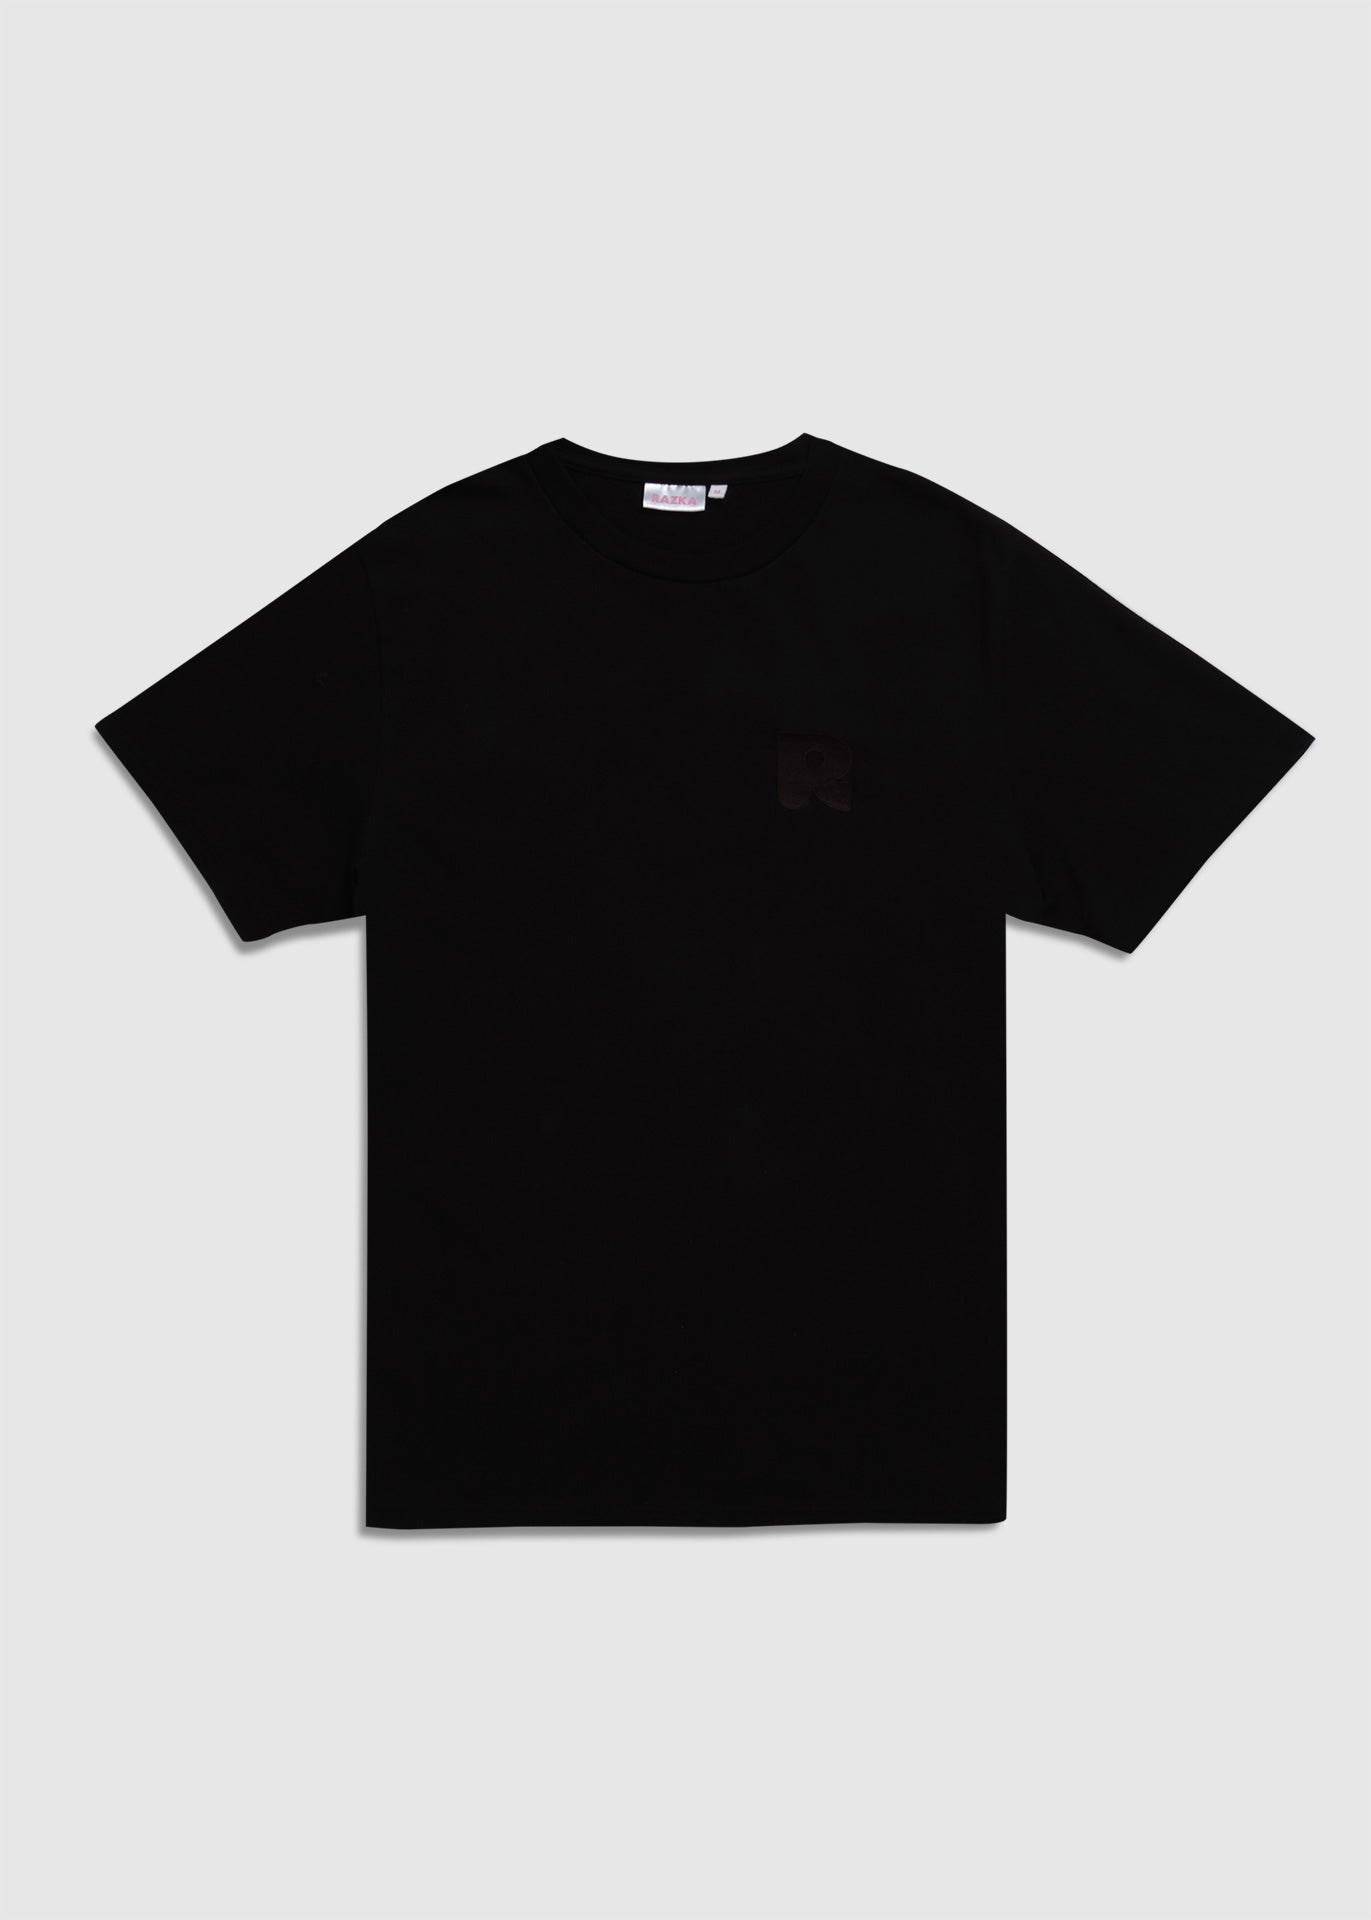 The Black t-shirt